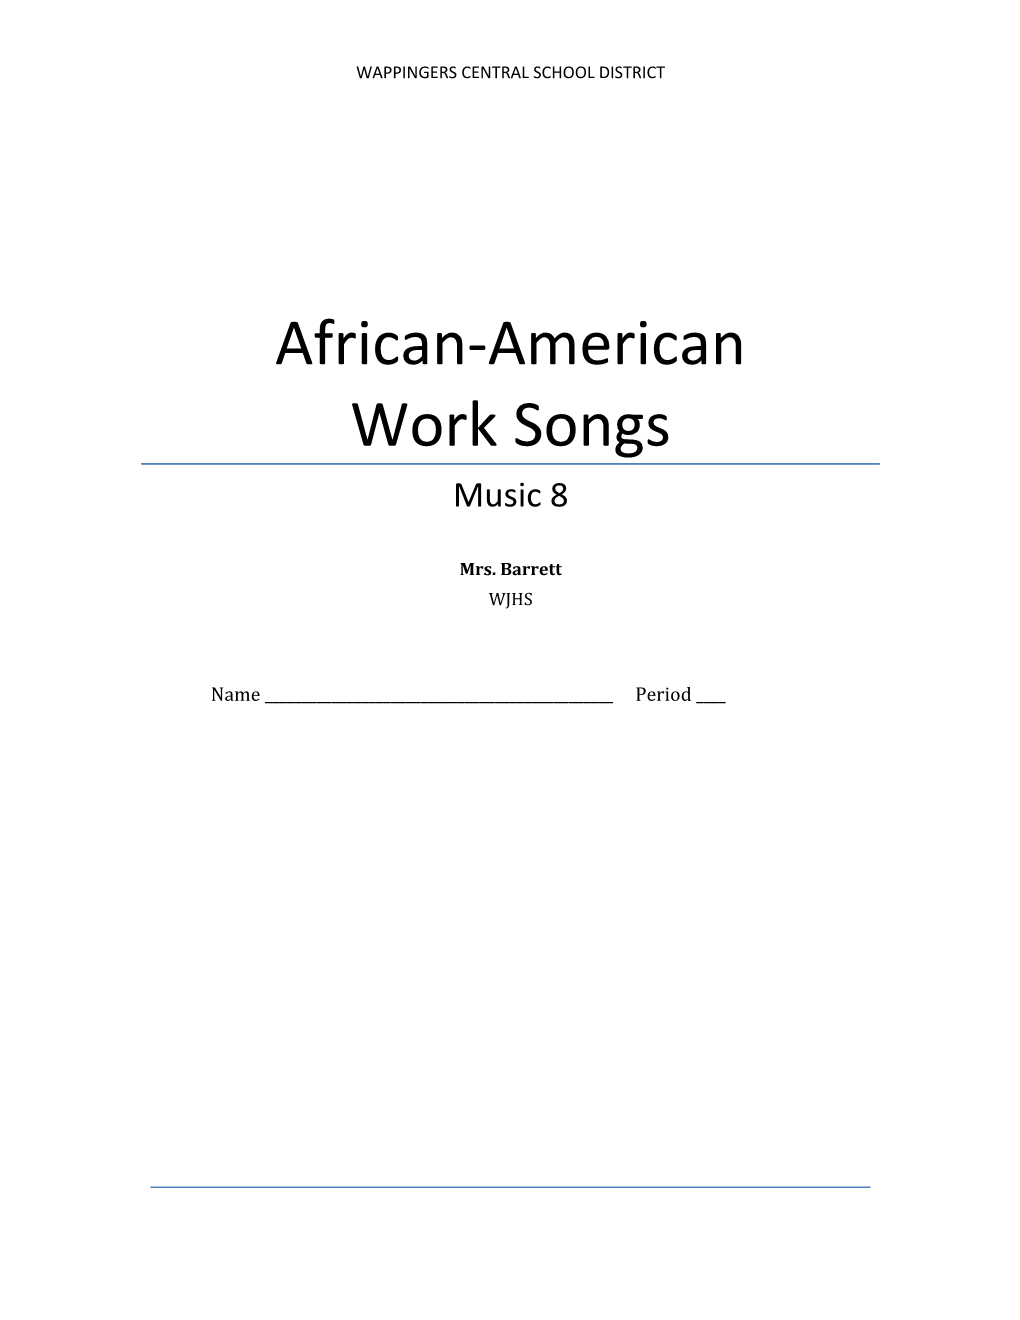 African-American Work Songs